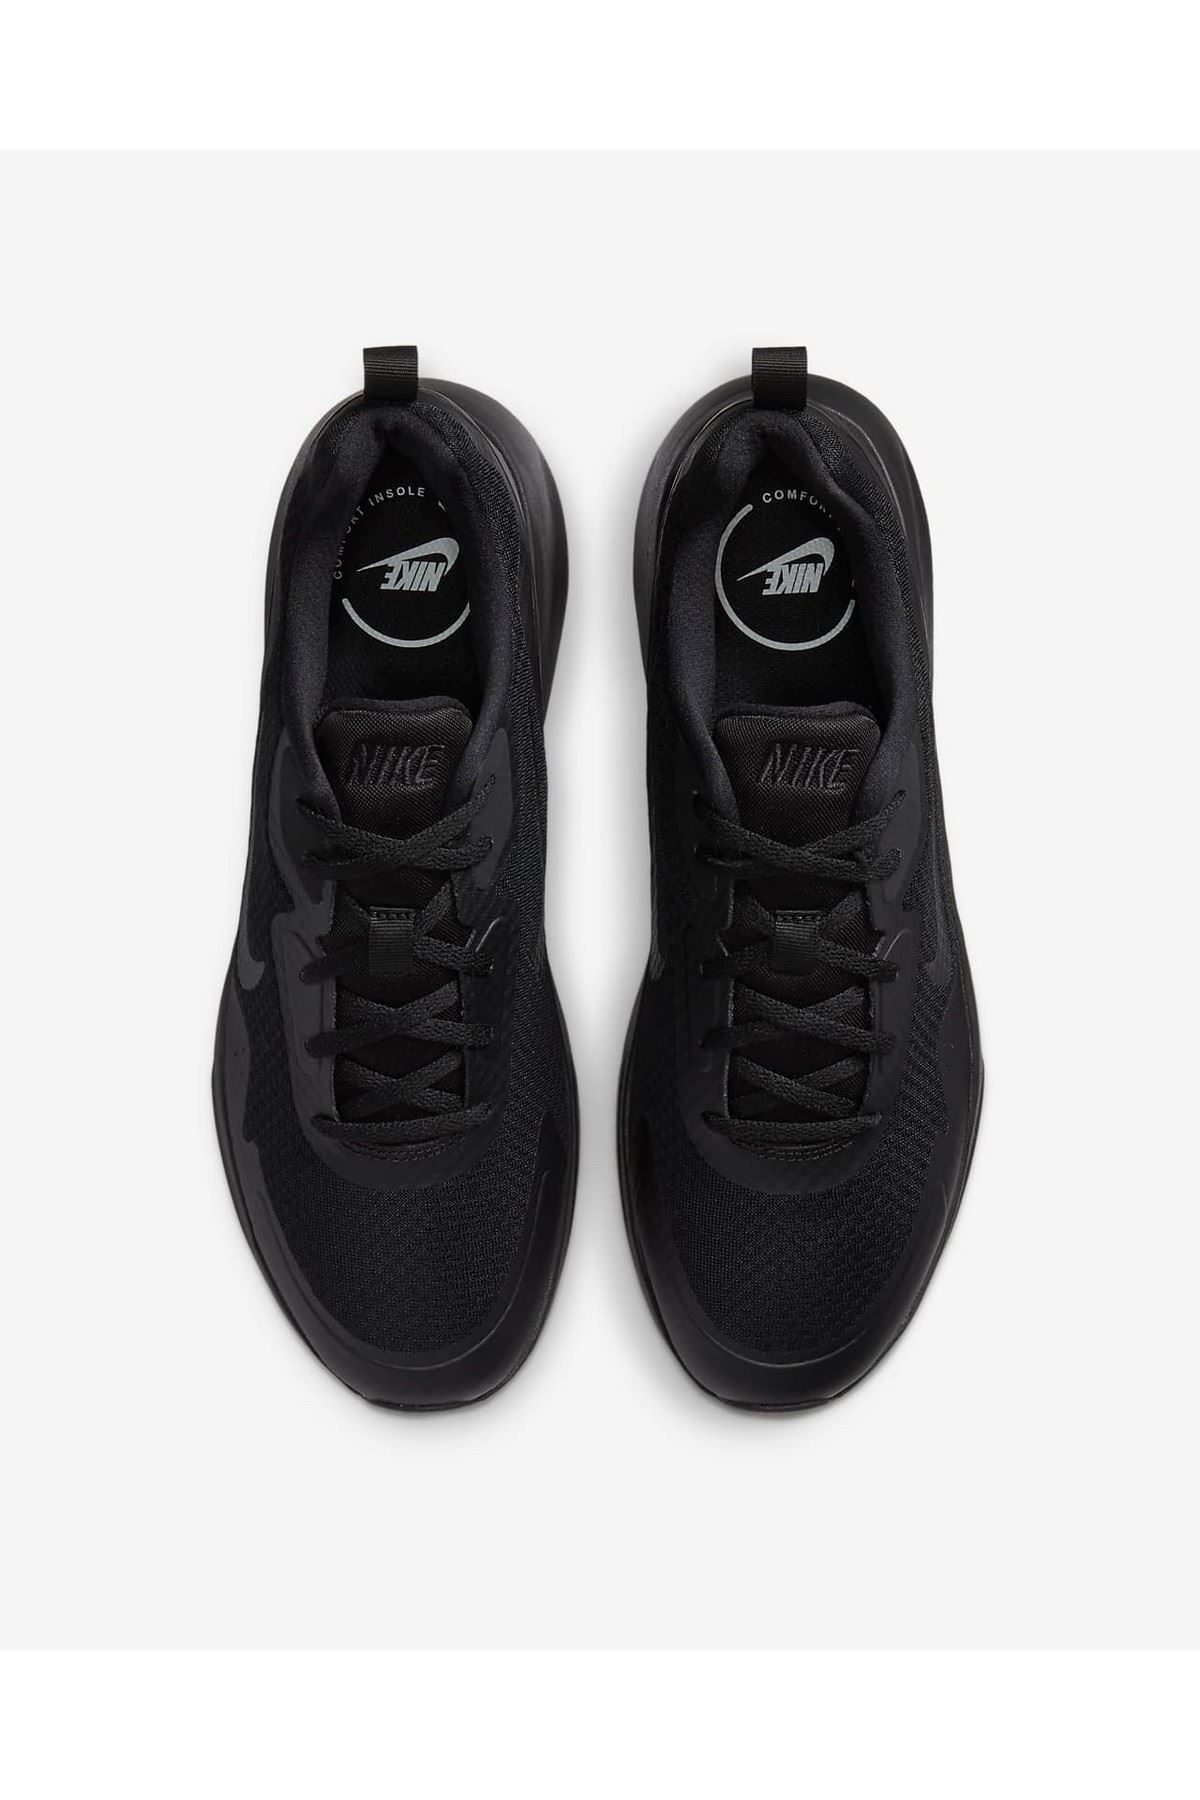 Nike Wearallday Erkek Siyah Spor Ayakkabı - CJ1682-003